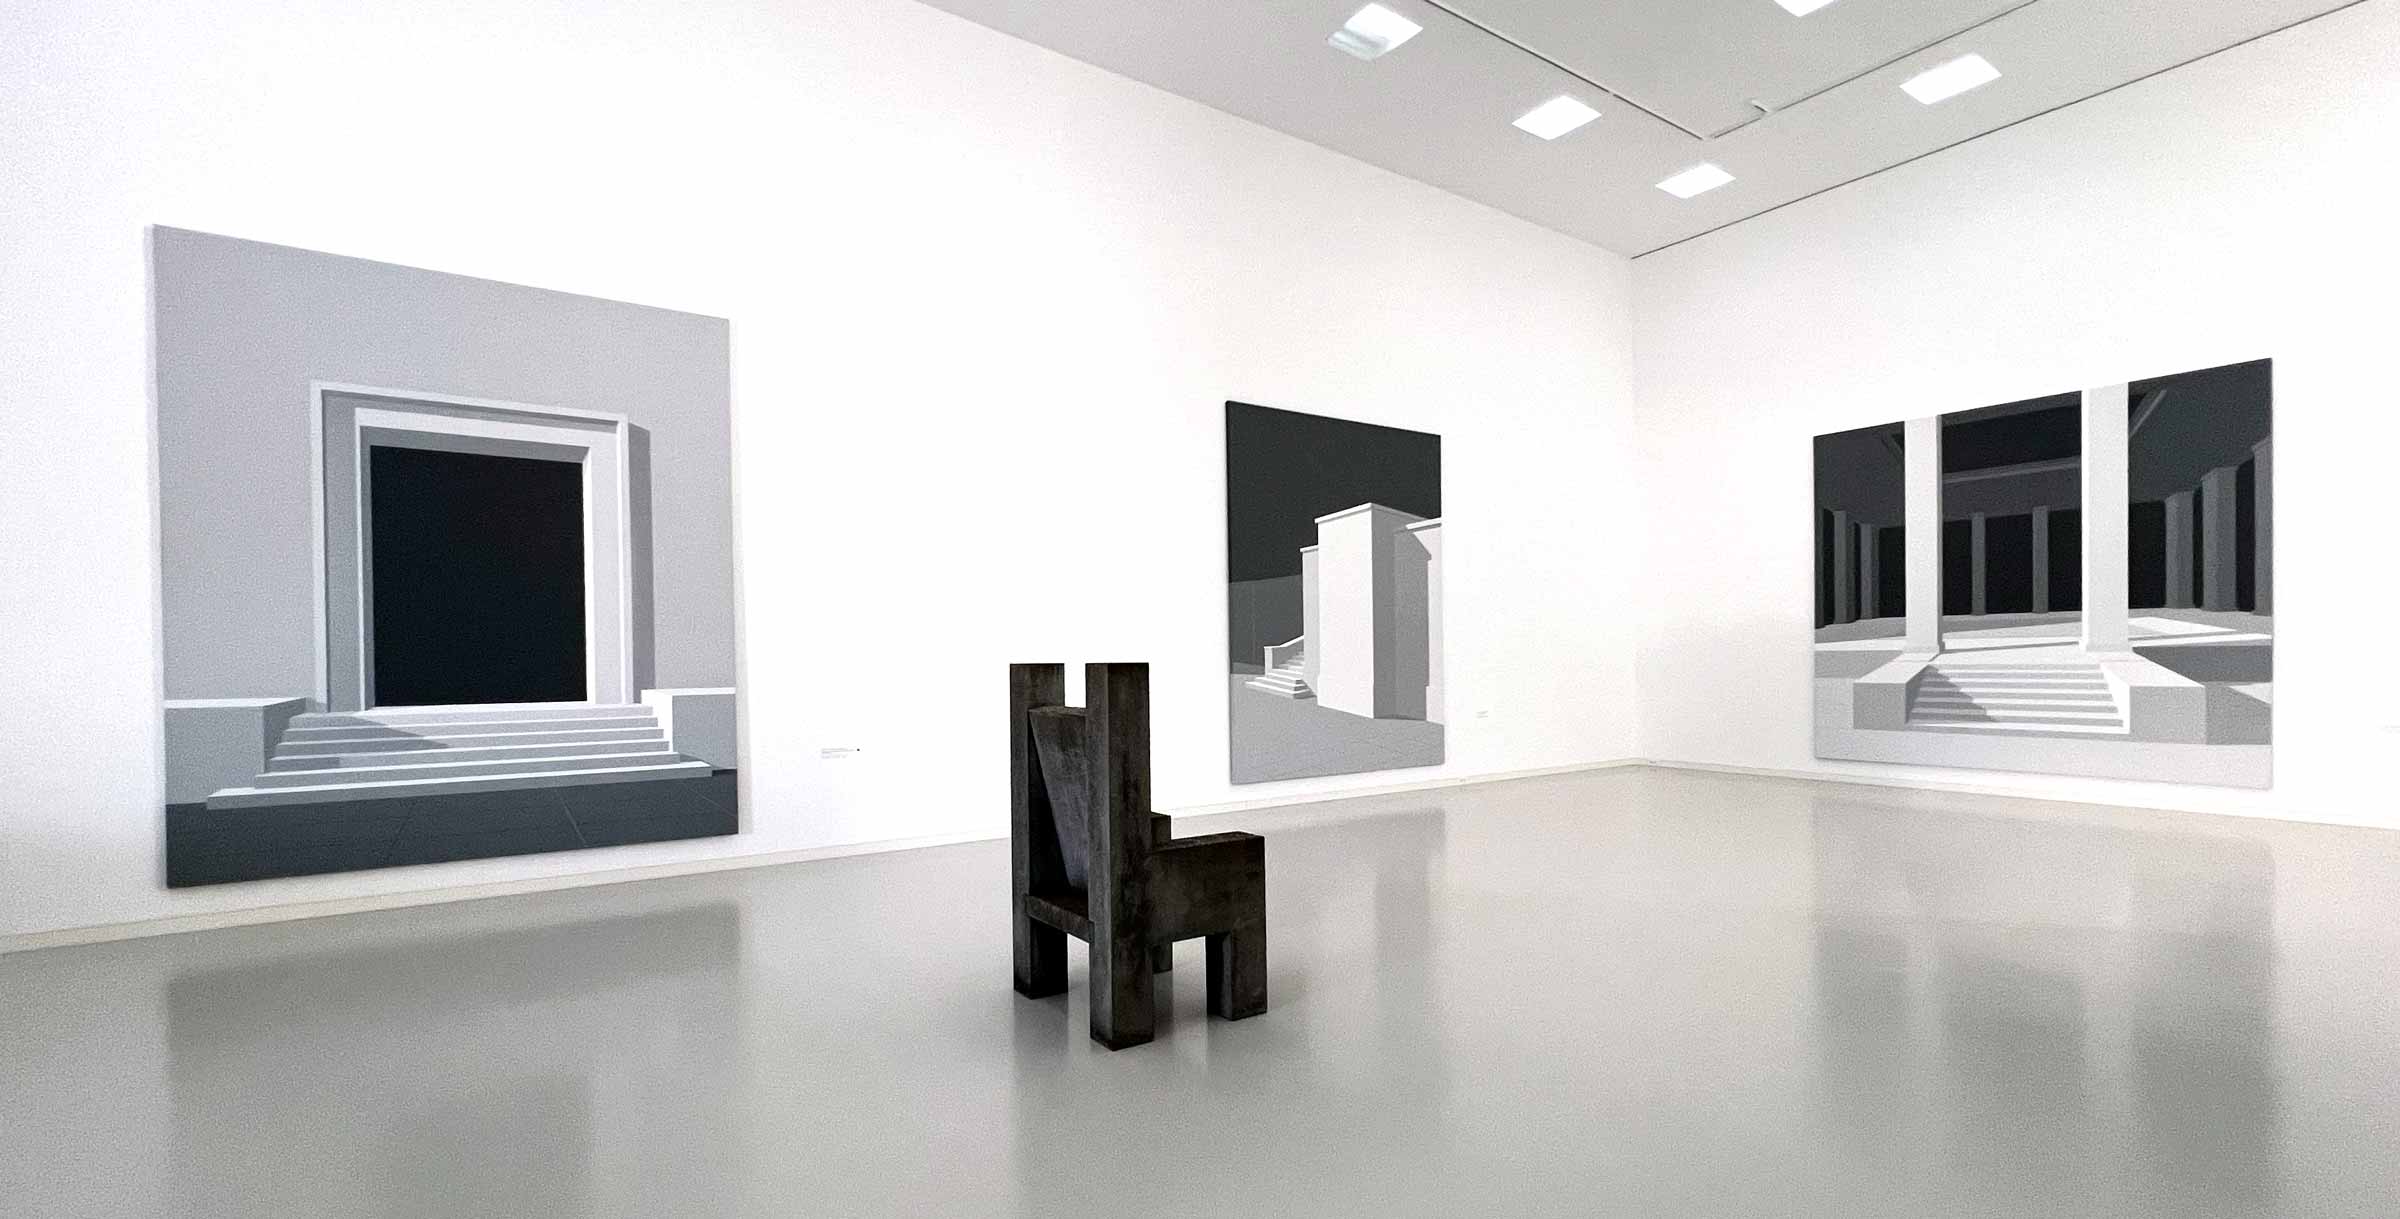 Ausstellungsraum mit NS-Architektur-Gemälden und einer Skulptur